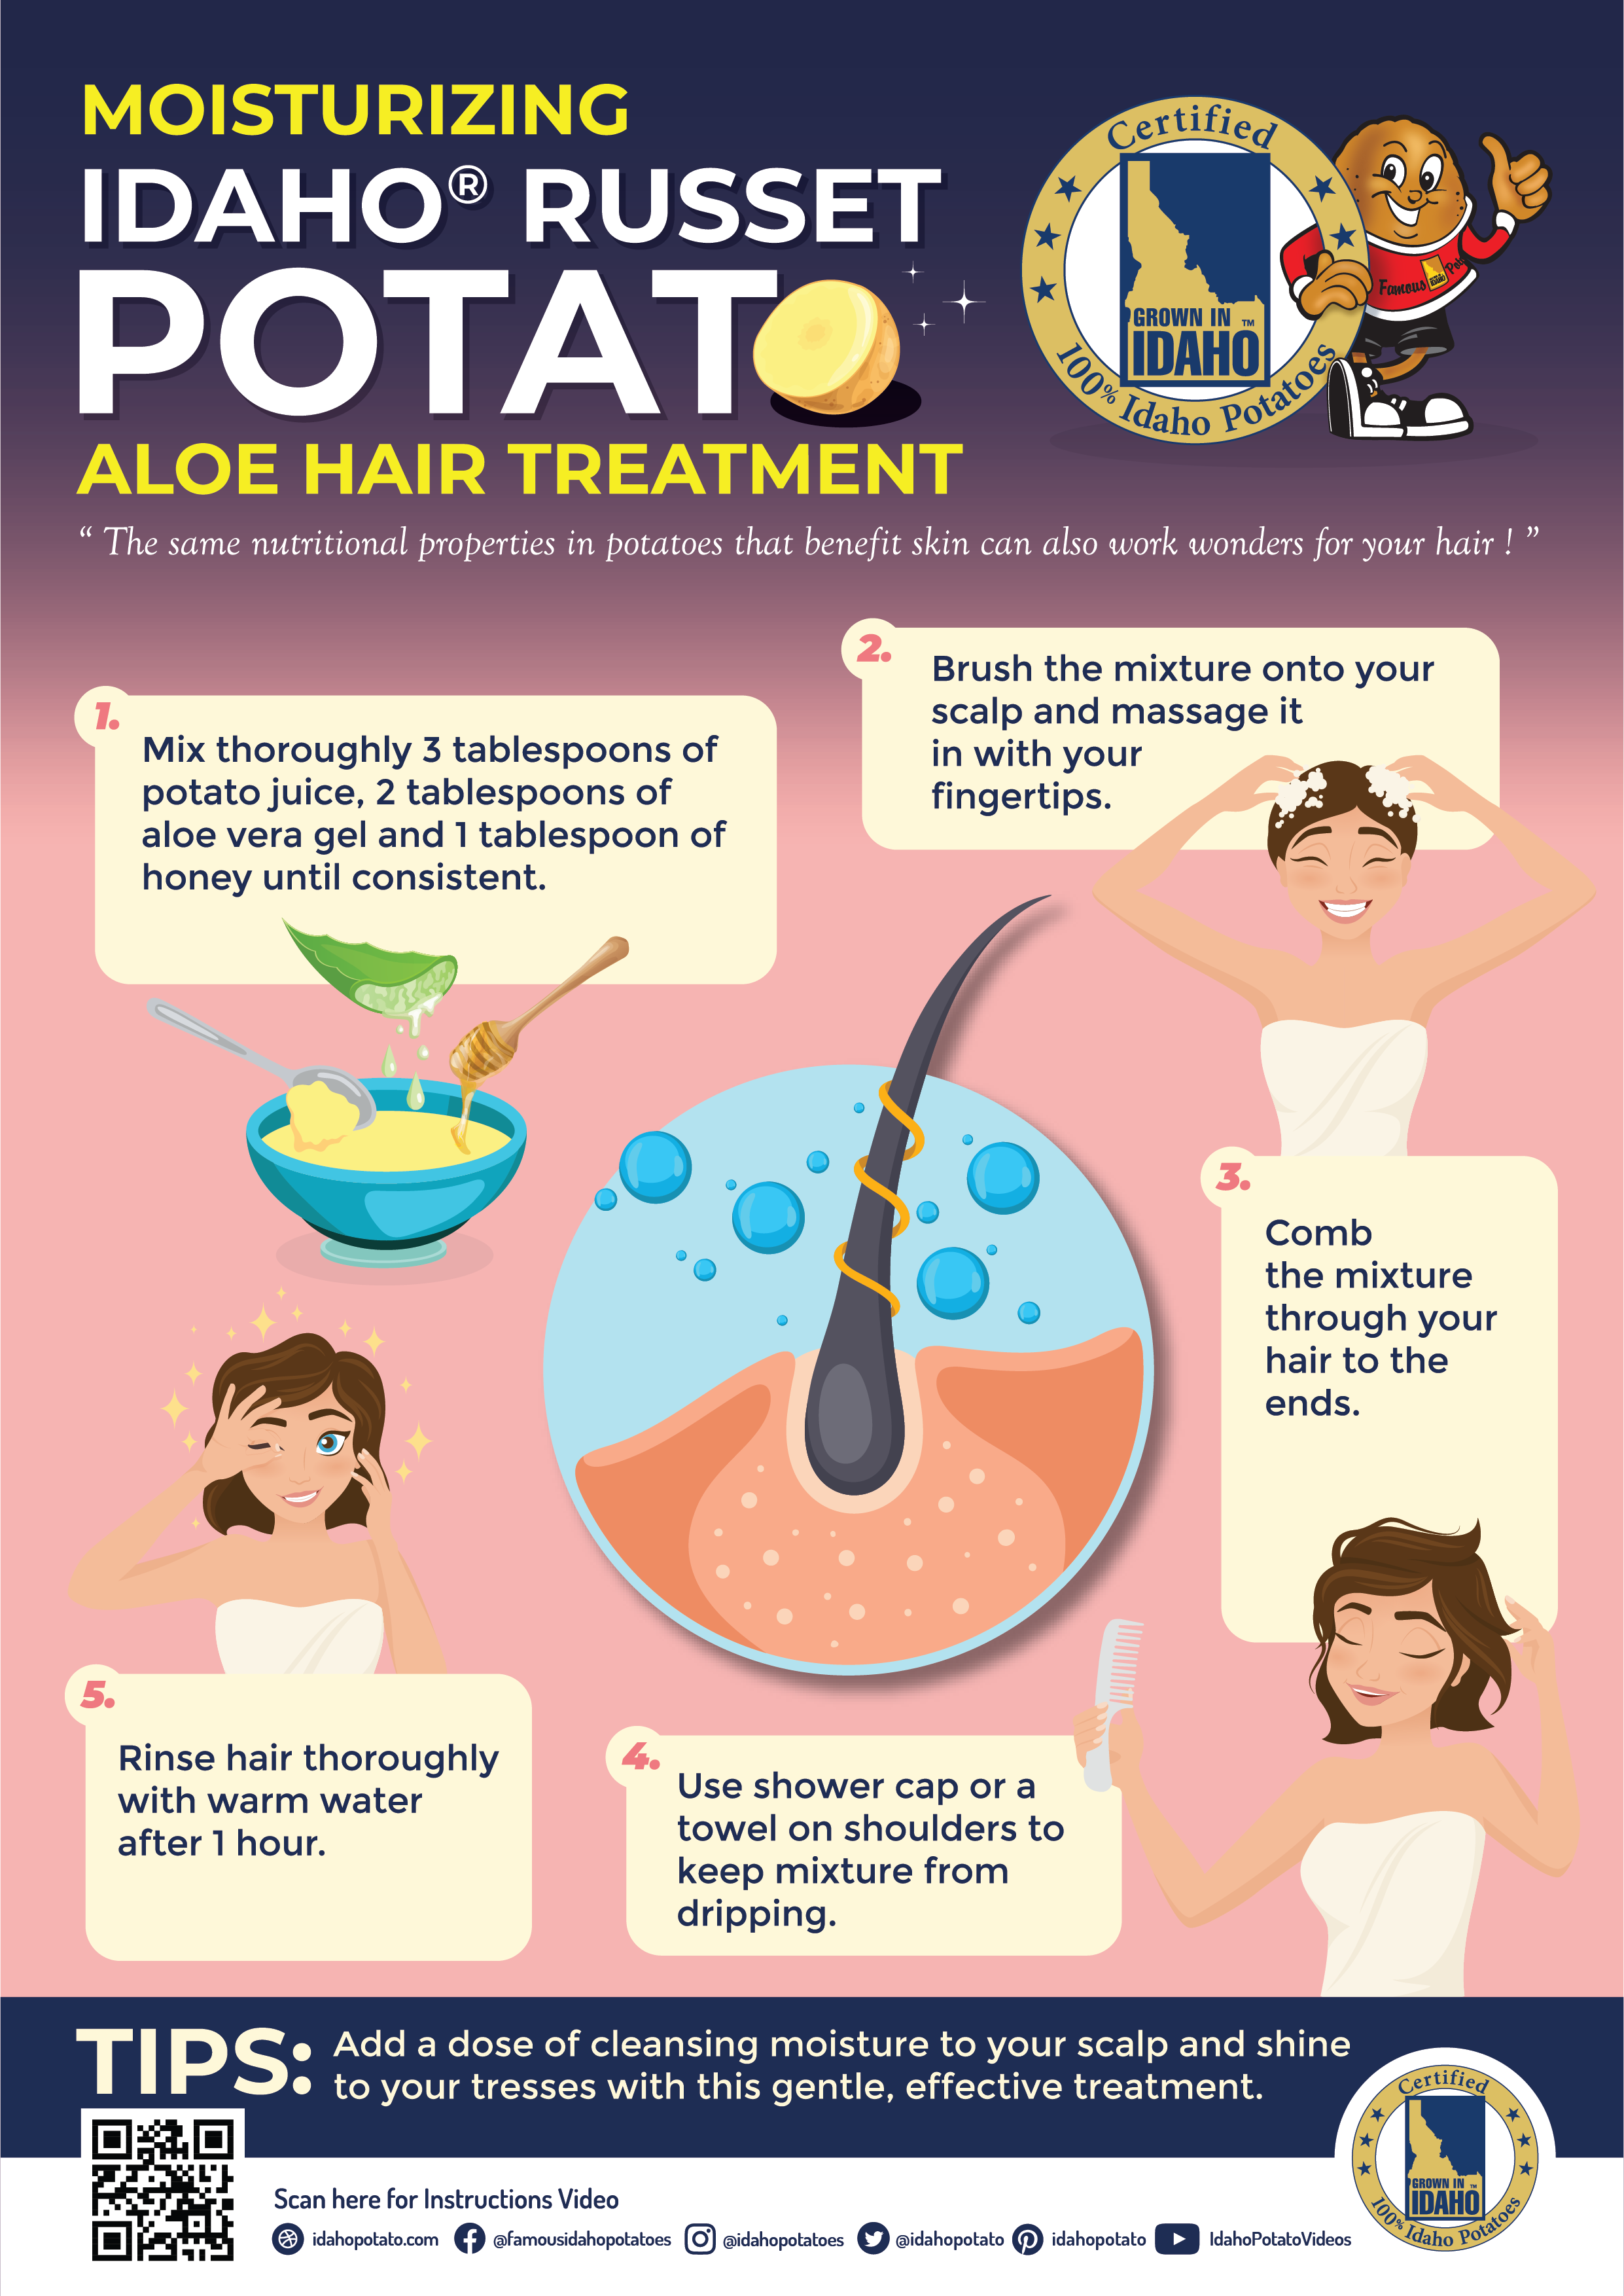 Moisturizing Idaho® Potato Aloe Hair Treatment